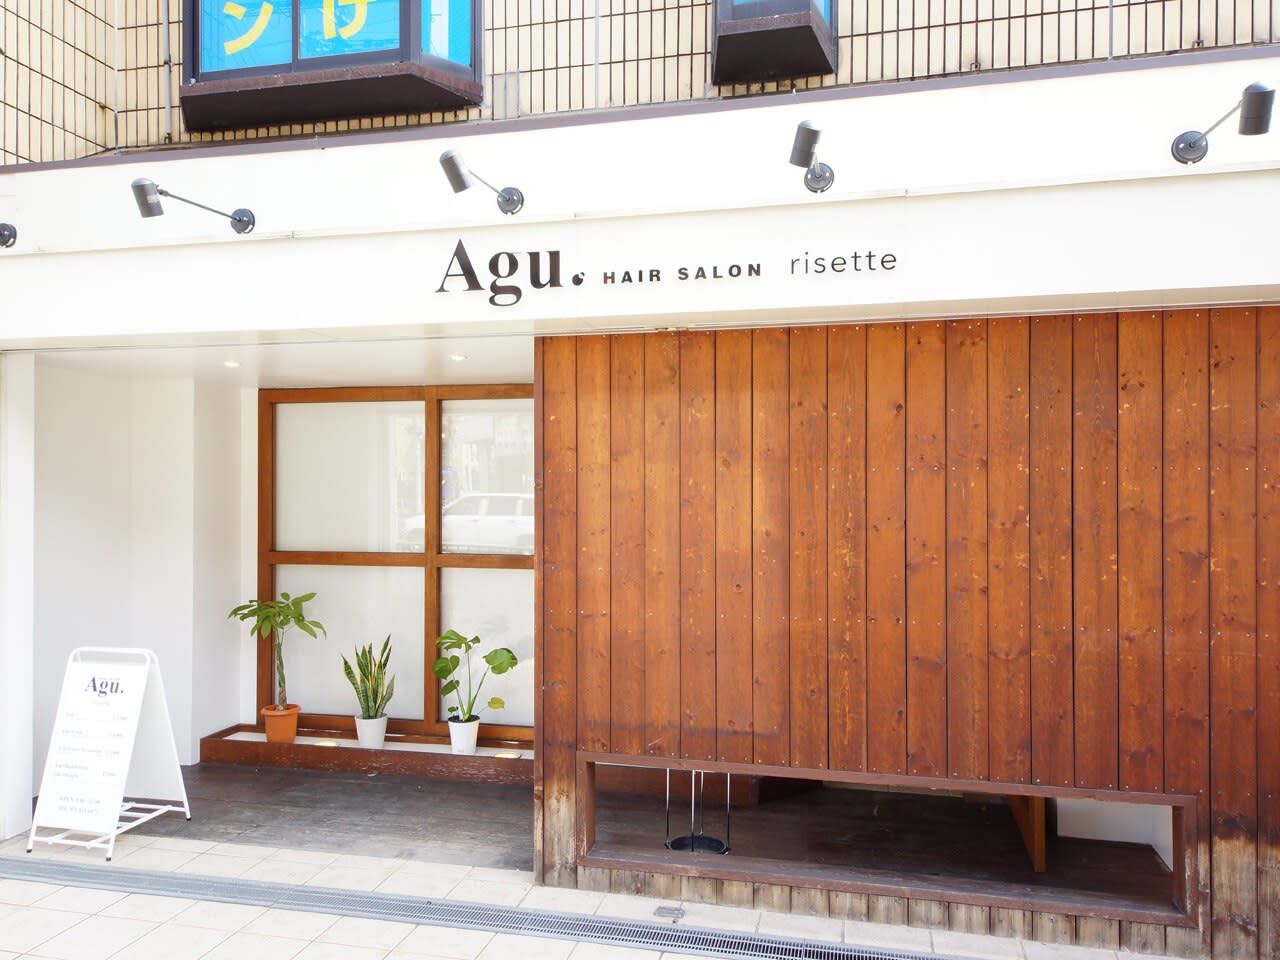 Agu hair risette 住道店【アグ ヘアー リゼット】のアイキャッチ画像